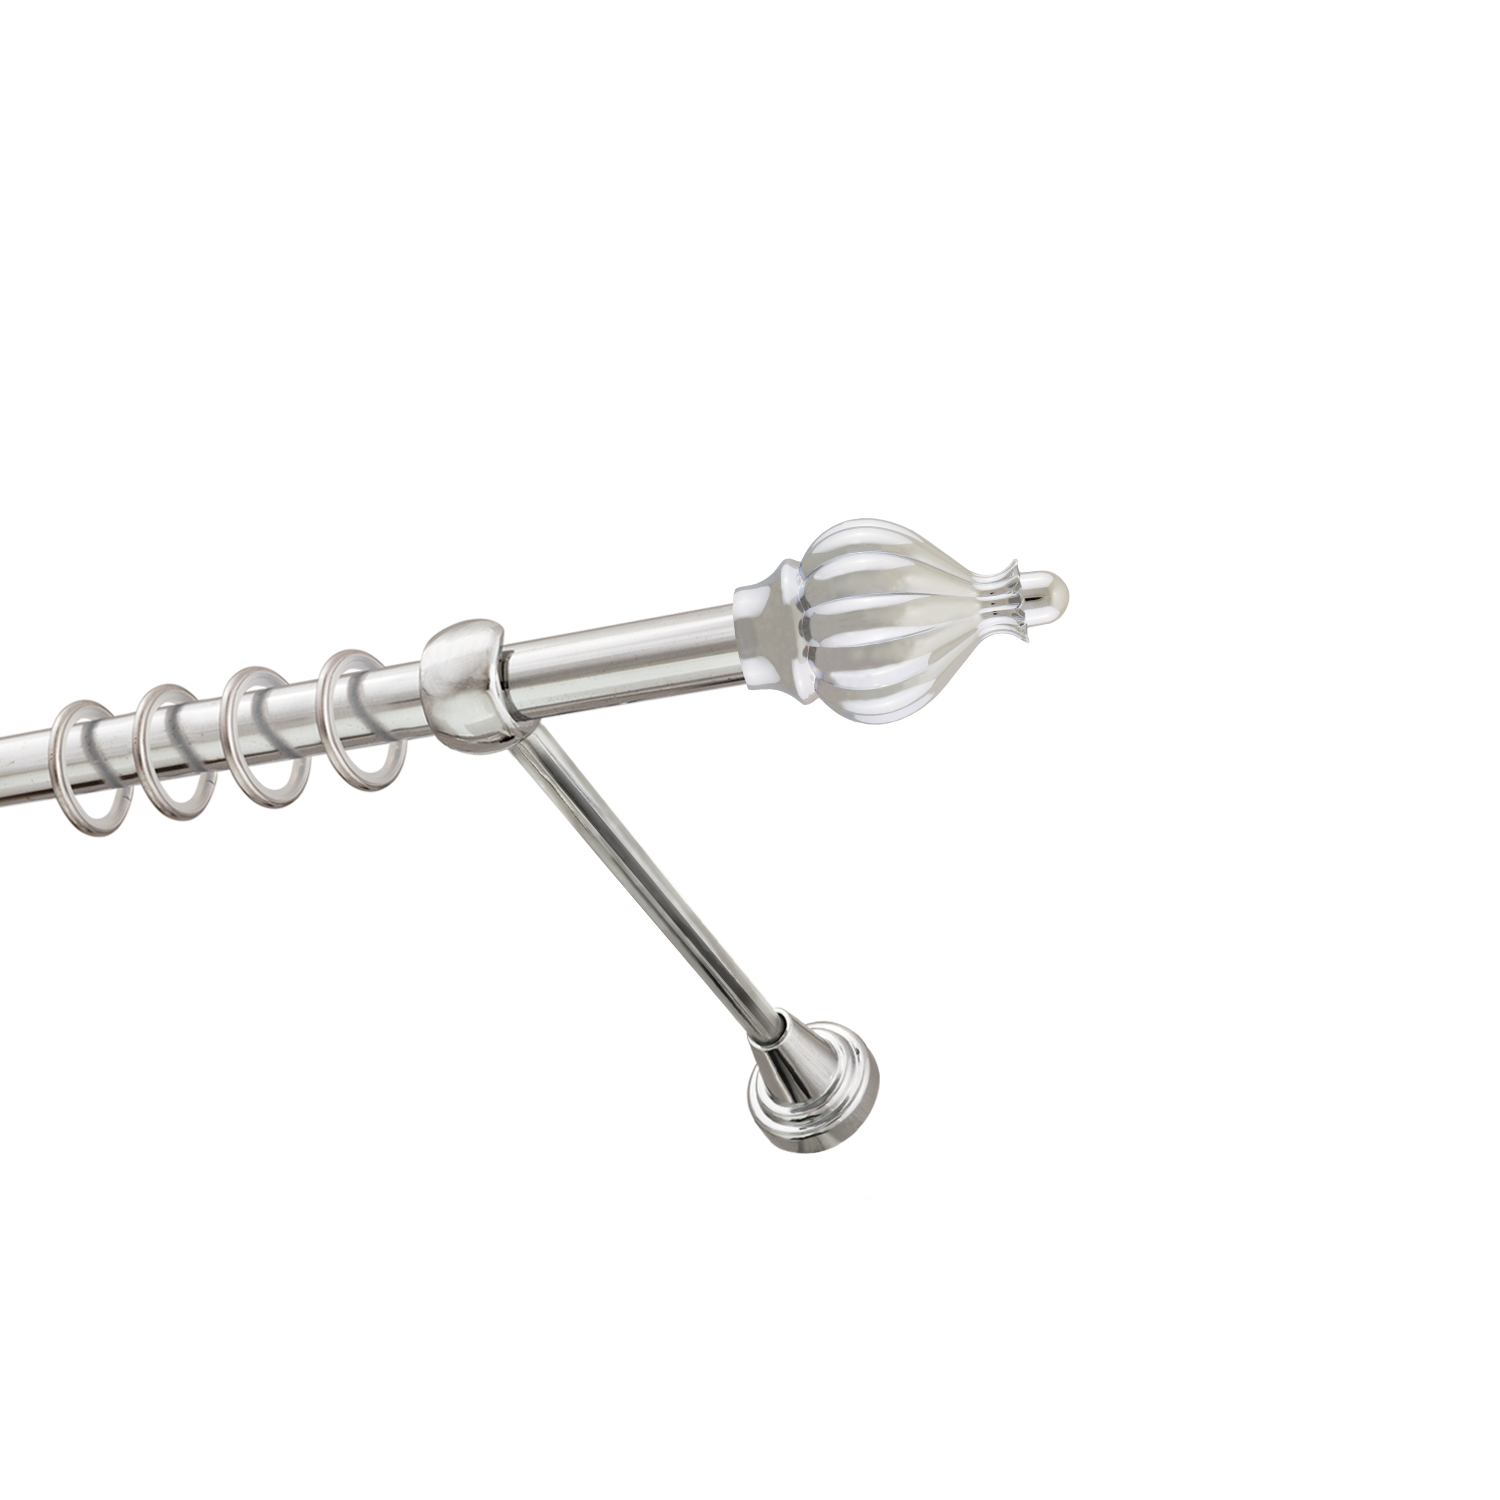 Металлический карниз для штор Афродита, однорядный 16 мм, серебро, гладкая штанга, длина 240 см